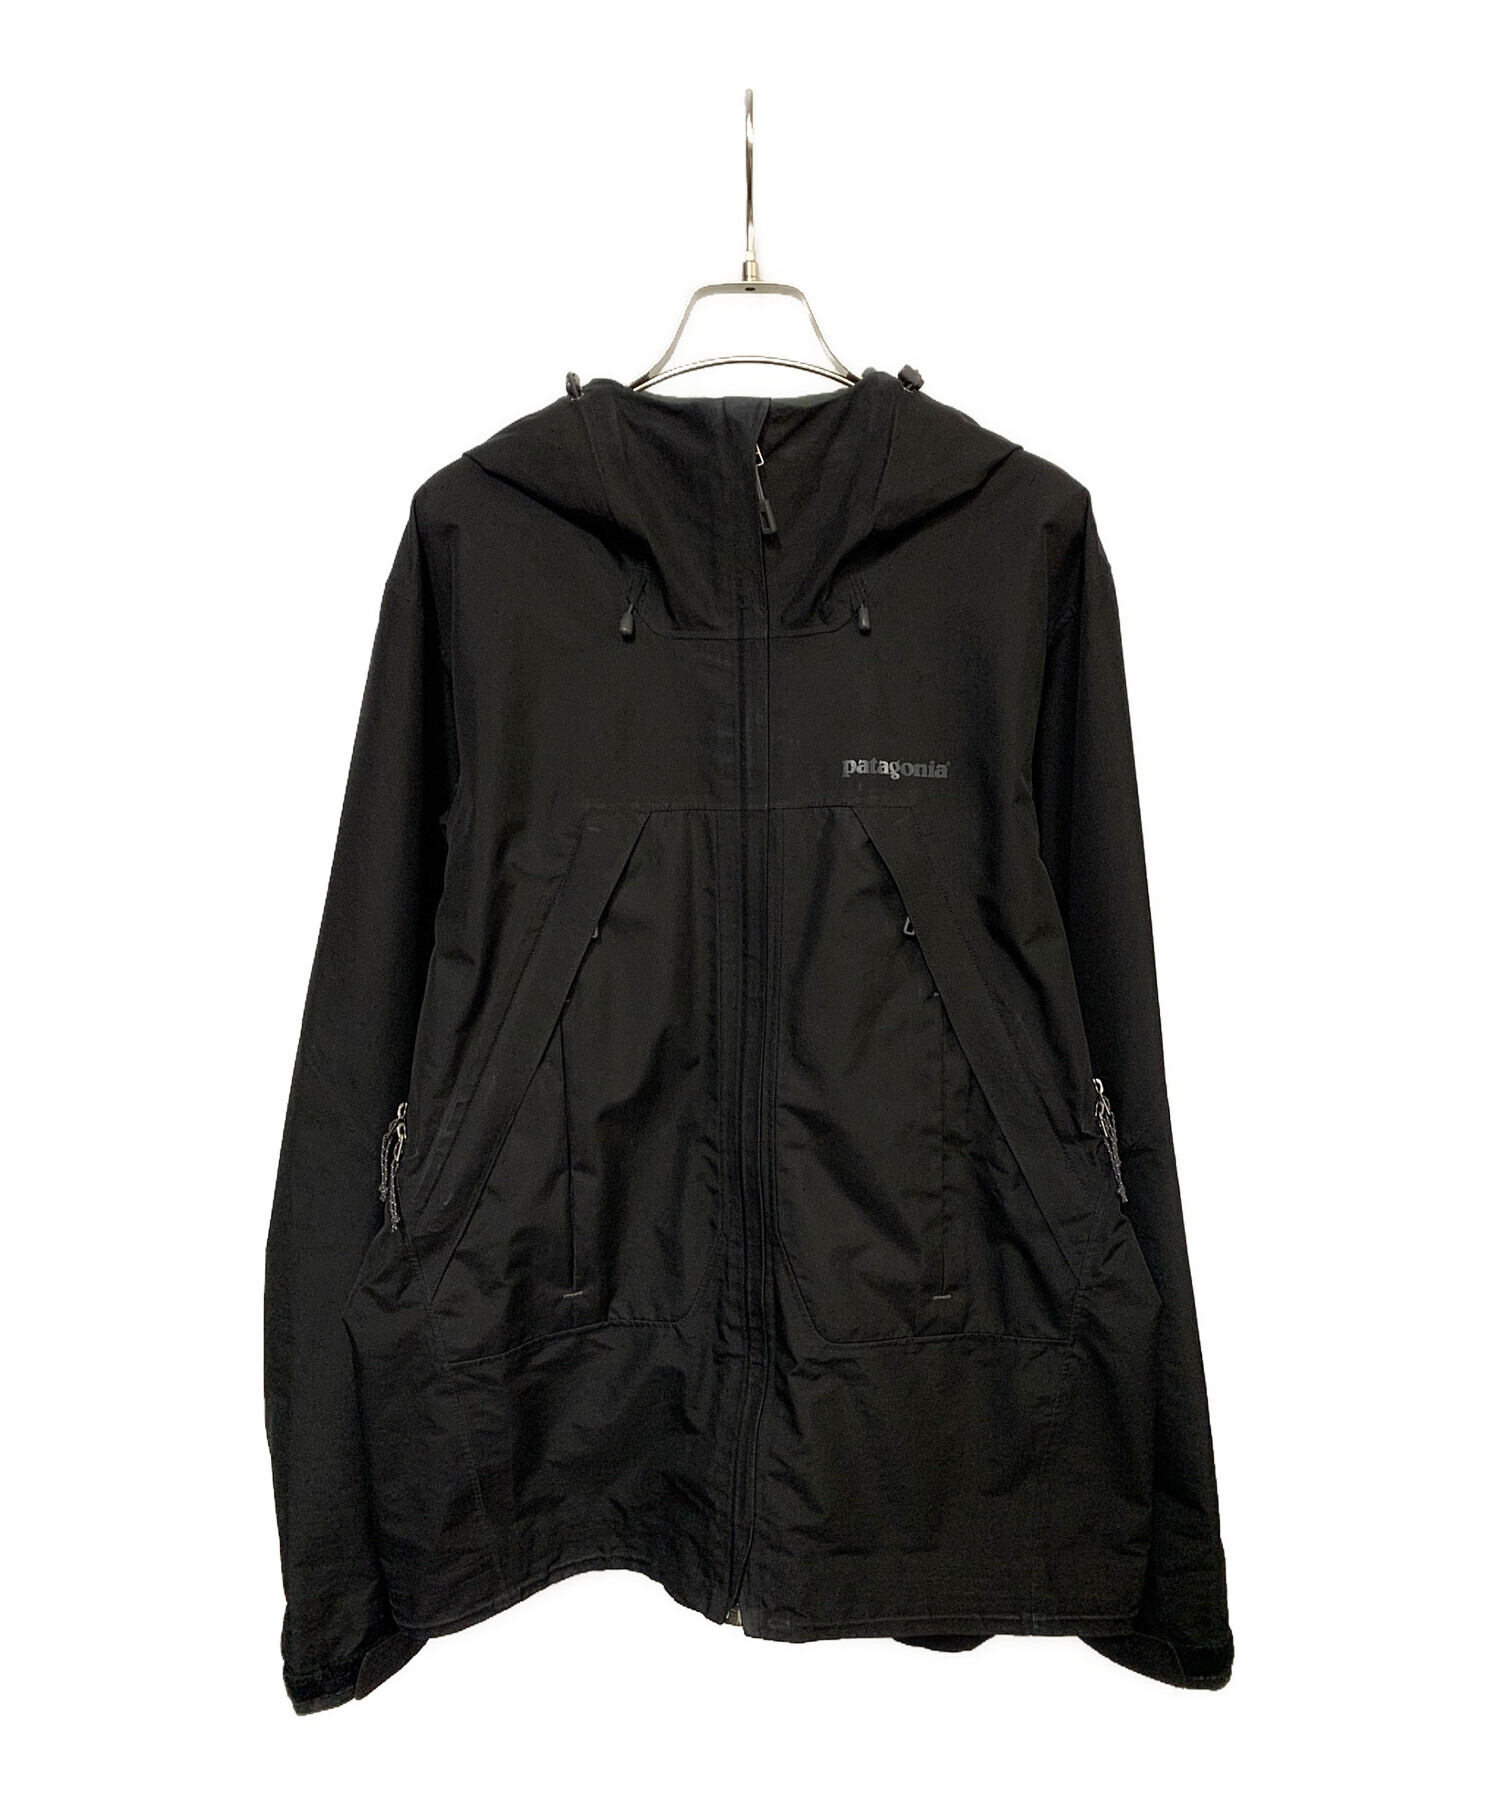 Patagonia (パタゴニア) ストームジャケット ブラック サイズ:S